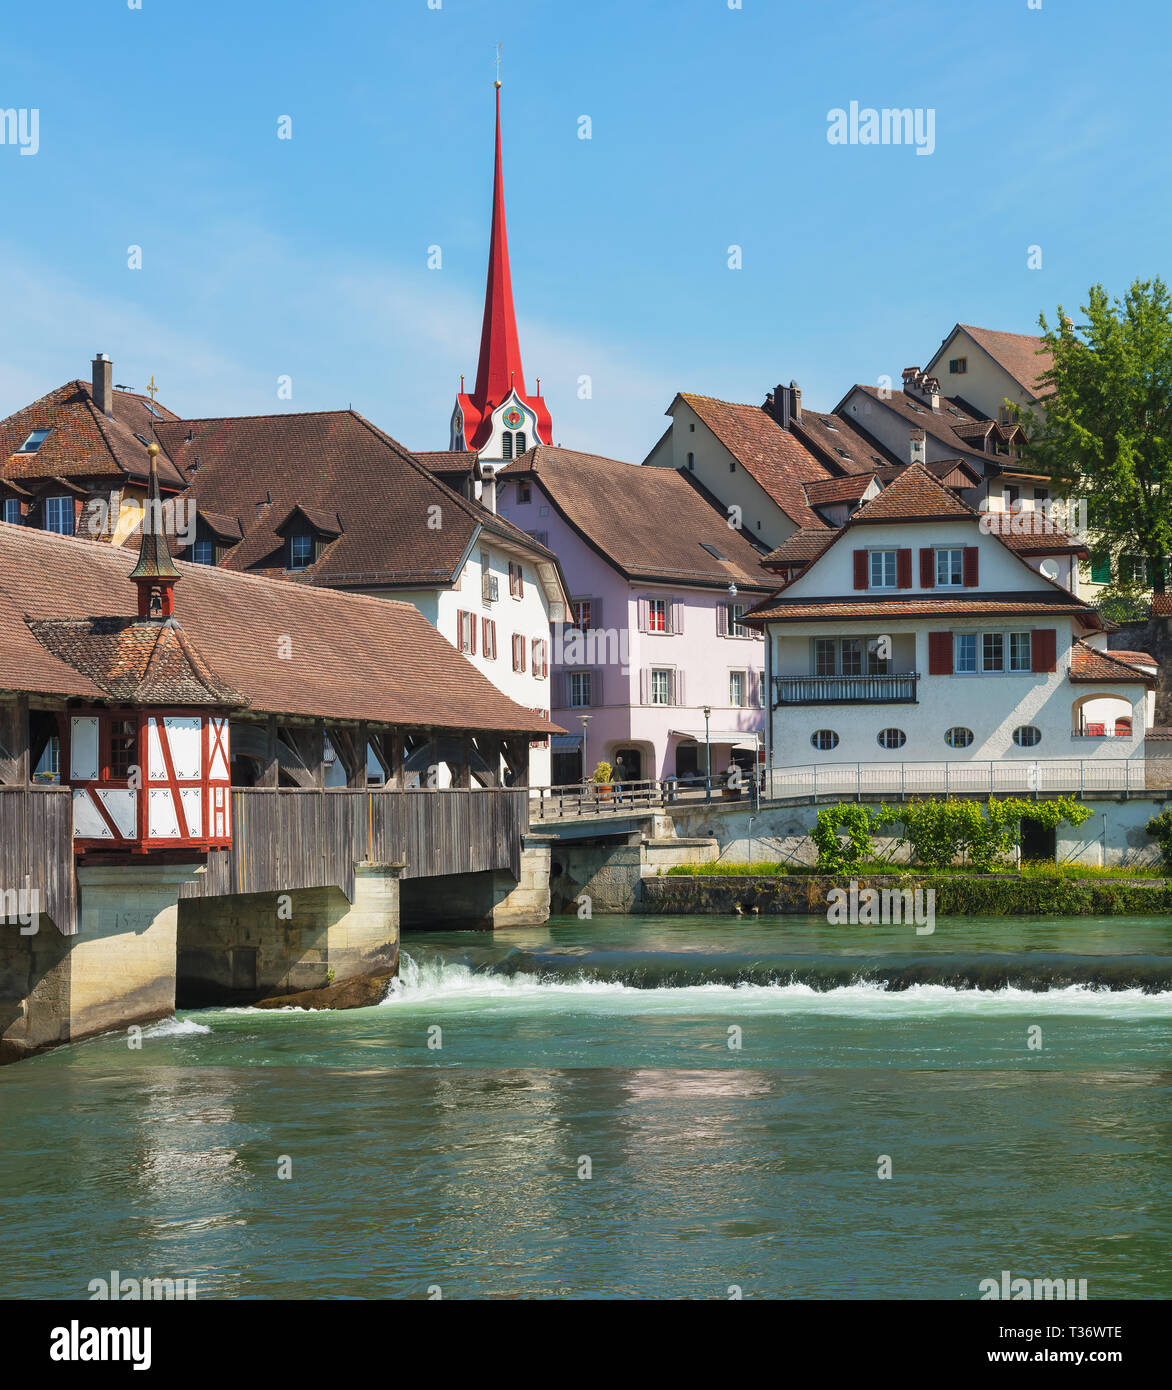 Mittelalterliche Brücke über die Reuss, Gebäude des historischen Teils der  Stadt Bremgarten, Schweiz. Bremgarten ist eine Gemeinde im t  Stockfotografie - Alamy